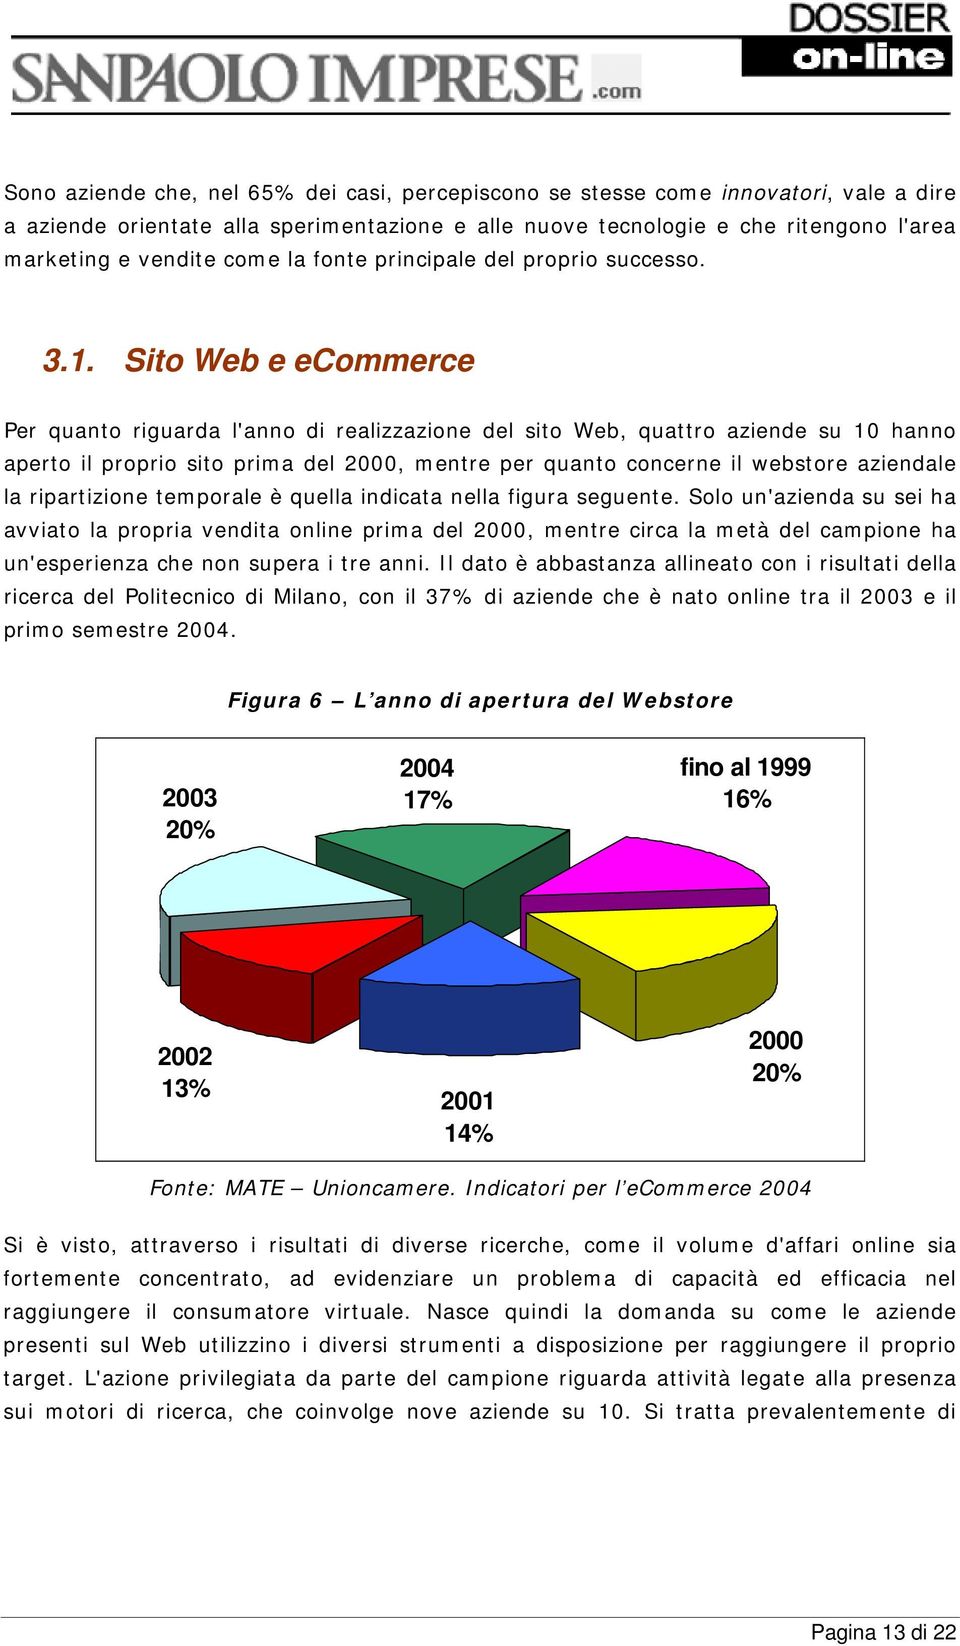 Sito Web e ecommerce Per quanto riguarda l'anno di realizzazione del sito Web, quattro aziende su 10 hanno aperto il proprio sito prima del 2000, mentre per quanto concerne il webstore aziendale la